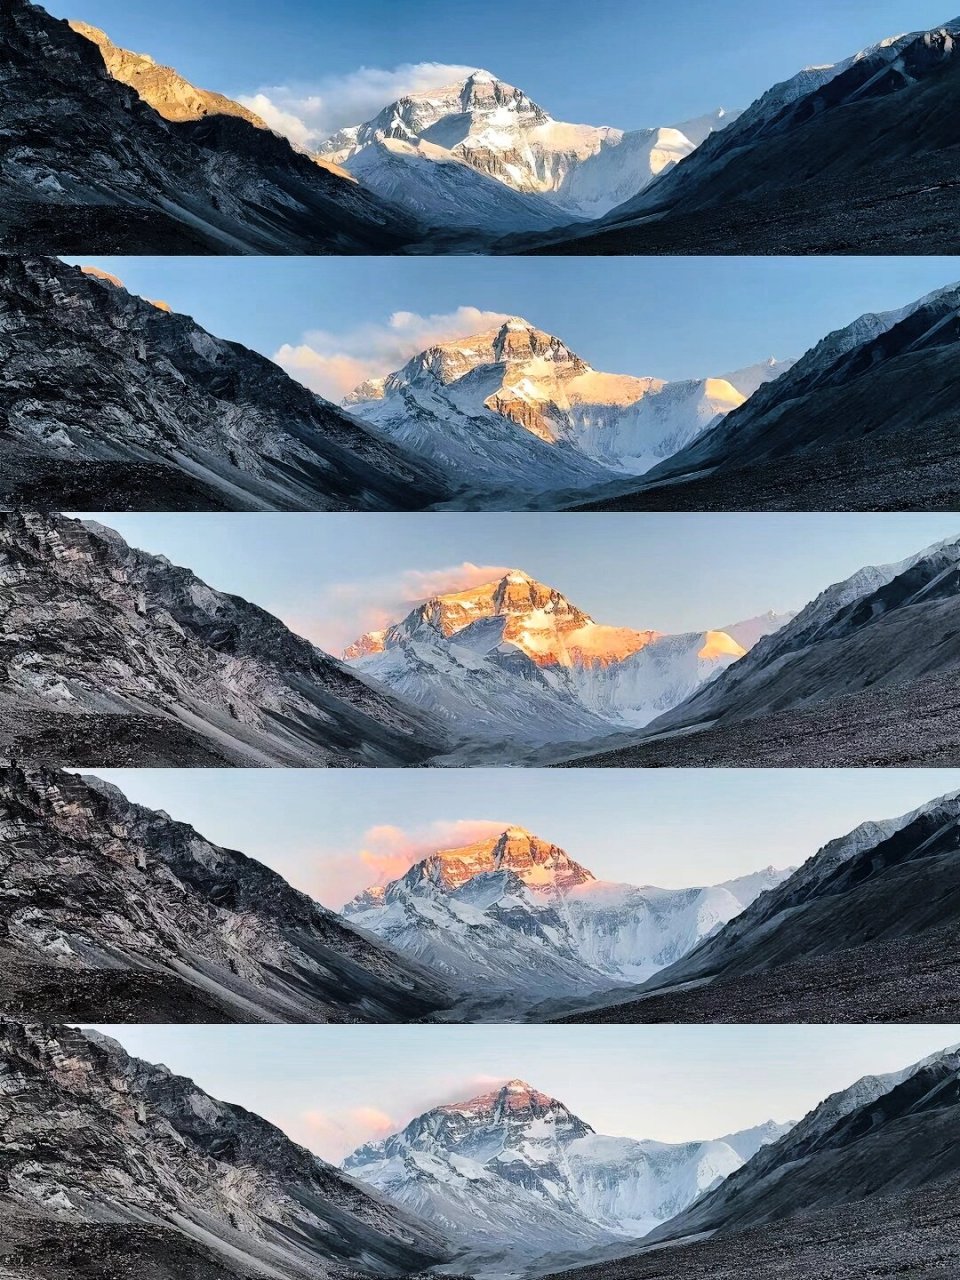 珠穆朗玛峰门票图片